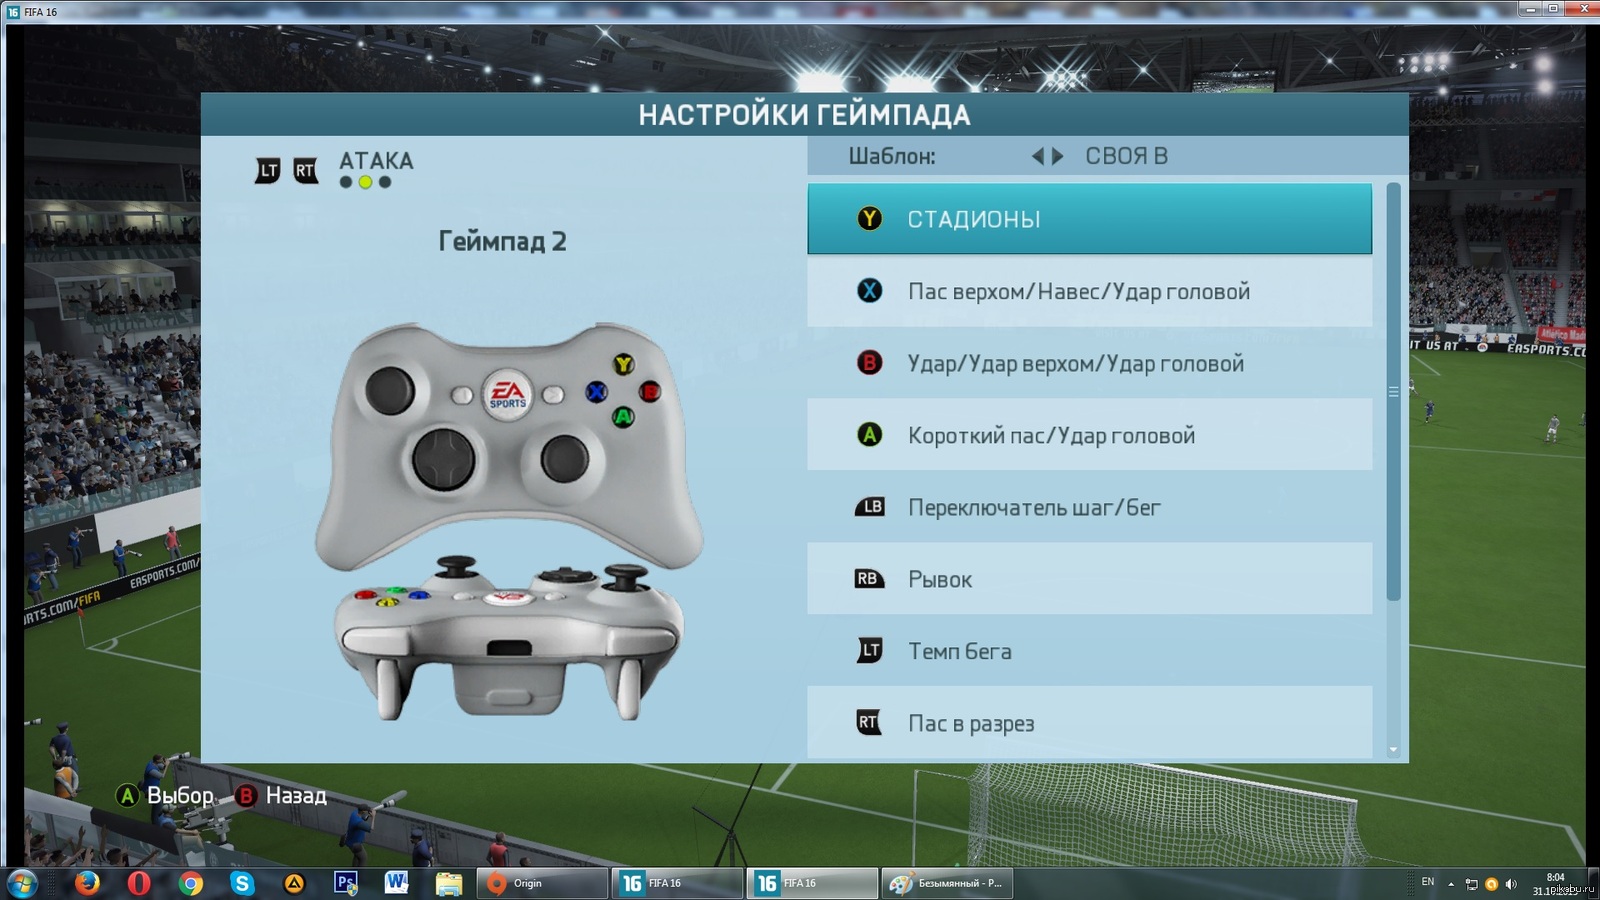 Управления fifa. Управление ФИФА 19 на джойстике Xbox 360. ФИФА управление на джойстике Xbox. Управление ФИФА 15 джойстик на Xbox. FIFA 22 управление на джойстике Xbox.